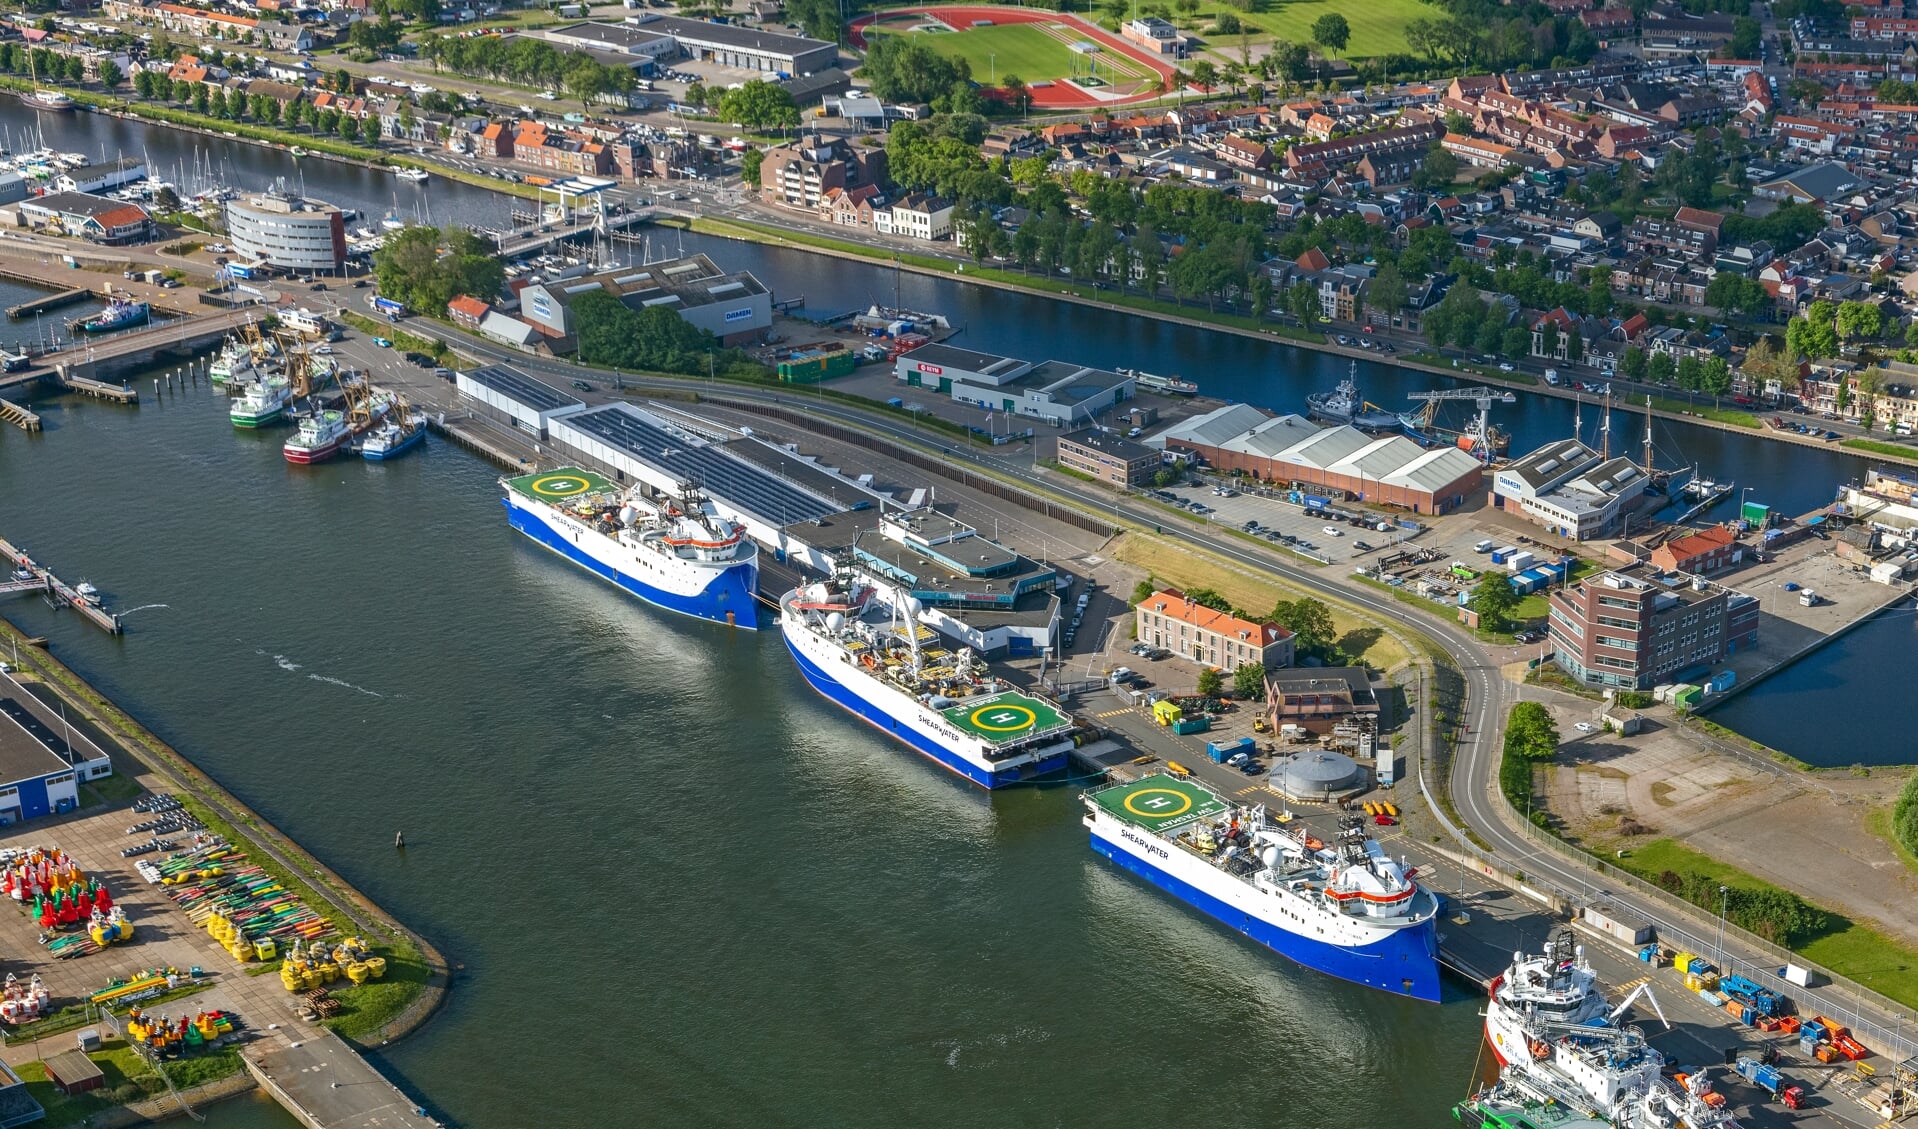 H Het visafslaggebouw in Den Helder wordt straks volledig verhuurd aan de offshore, die nu ook al een deel in gebruik heeft. Alle vis gaat naar Den Oever. (Foto: Flying Focus)